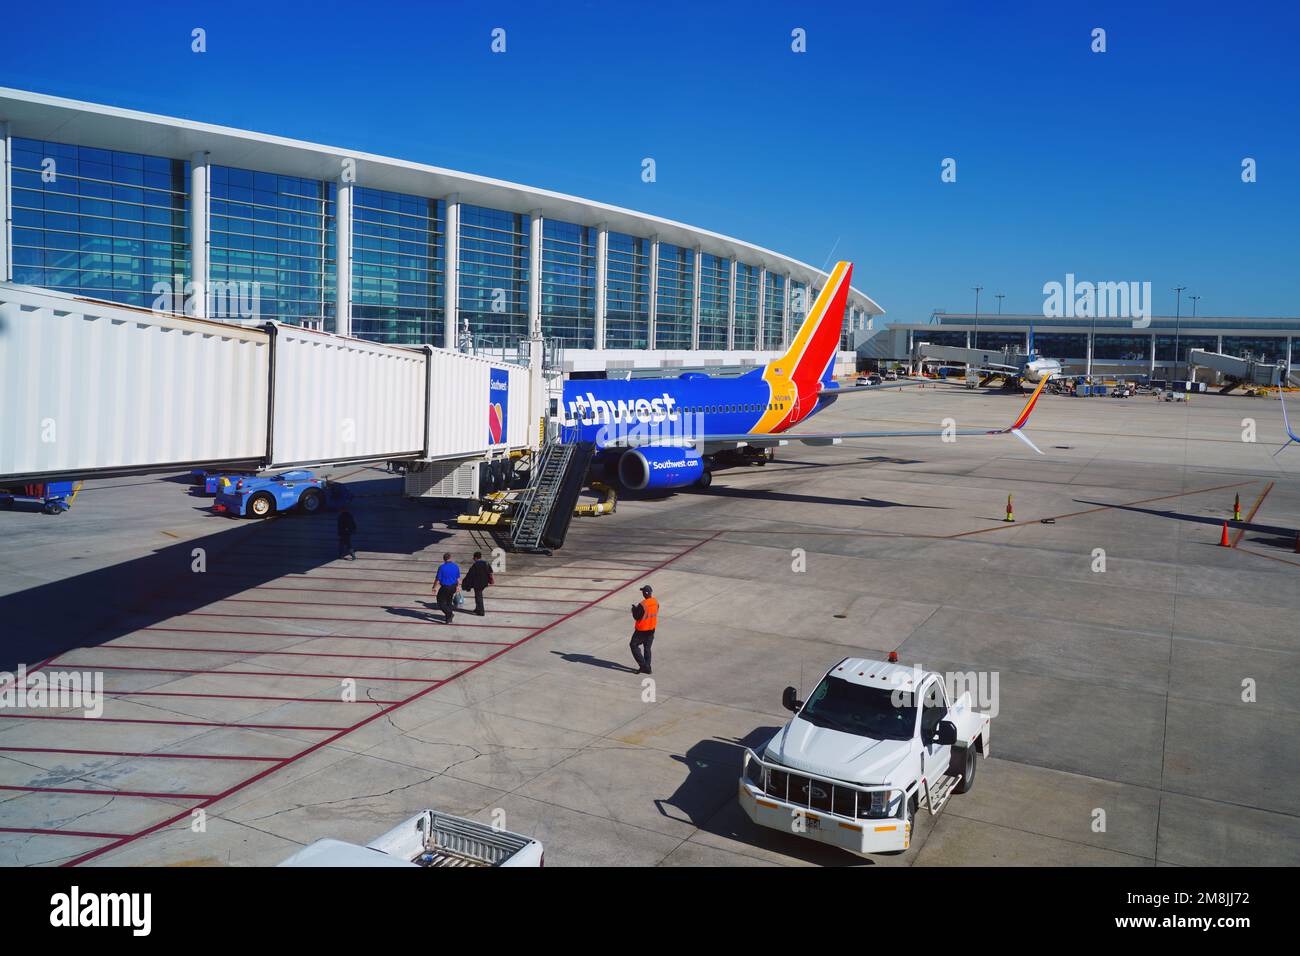 LA NOUVELLE-ORLÉANS, LA -8 JANVIER 2023 - vue d'un avion de Southwest Airlines (WN) à l'aéroport international Louis Armstrong de la Nouvelle-Orléans (MSY). Banque D'Images